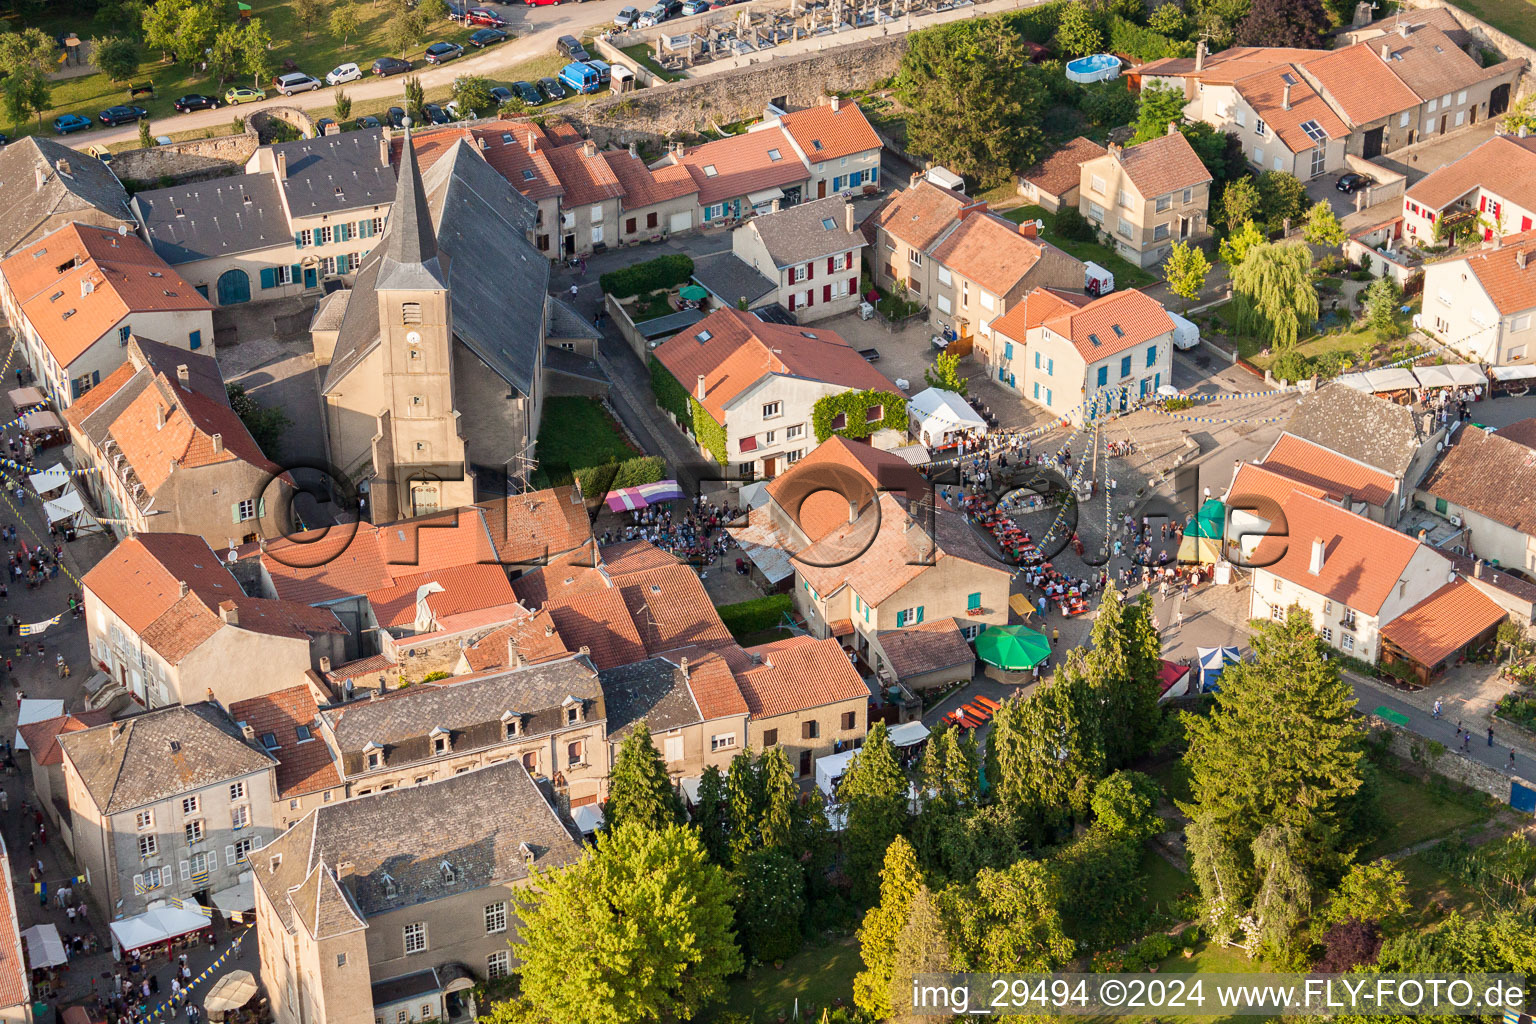 Luftbild von Mittelaltermarkt in Rodemack in Grand Est im Bundesland Moselle, Frankreich